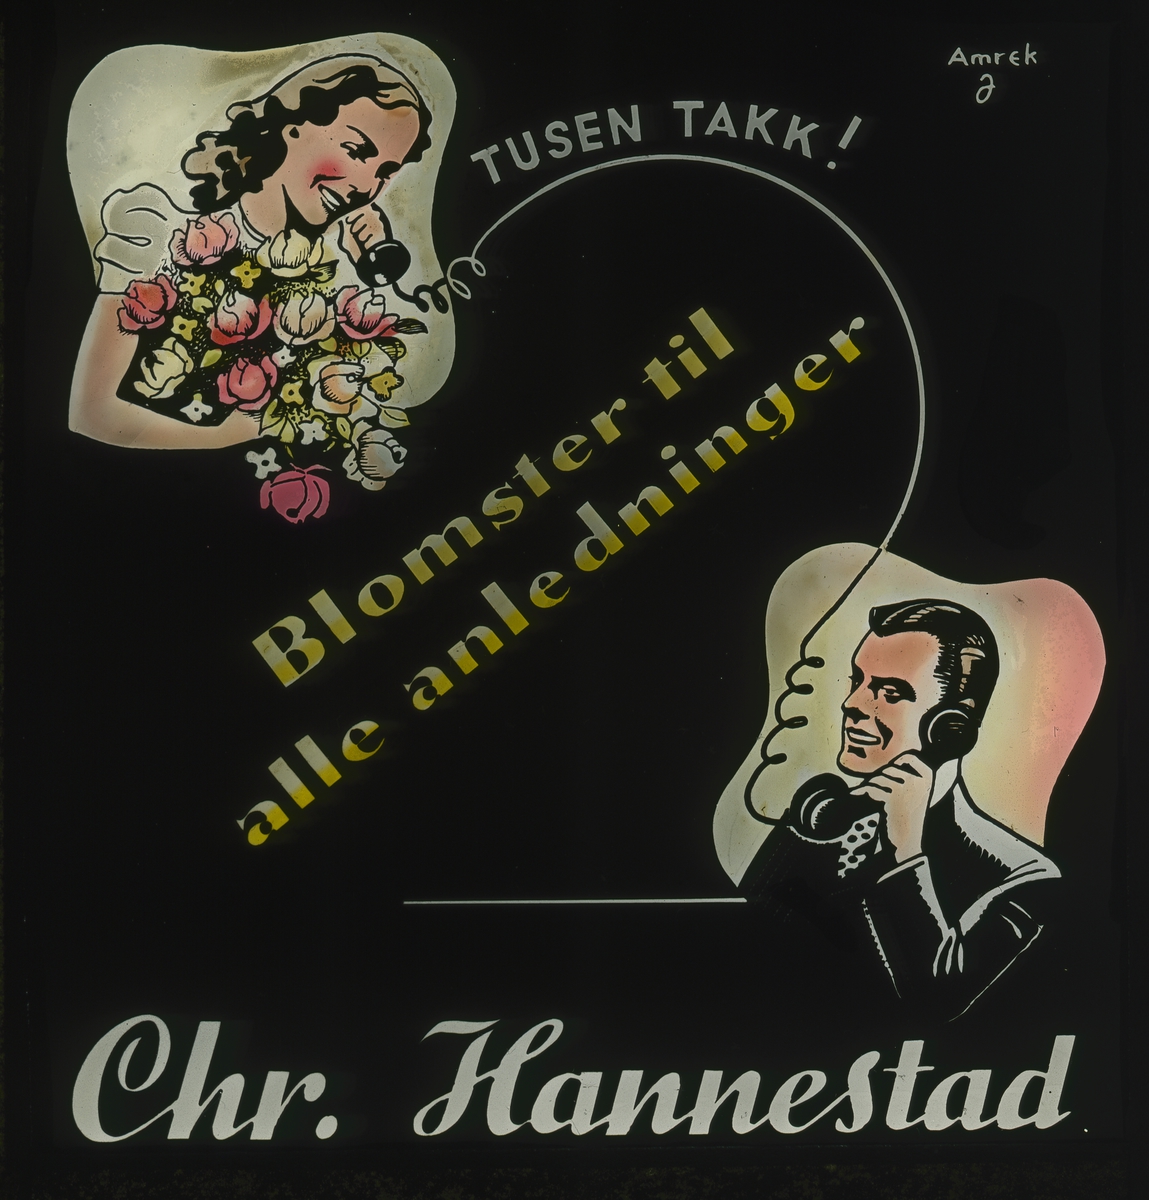 Grafisk kinoreklame fra 1950-tallet med Chr. Hannestad sin logo, dame med blomsterbukett som telefonerer en herre, og teksten "Tusen takk!" og "Blomster til enhver anledning".